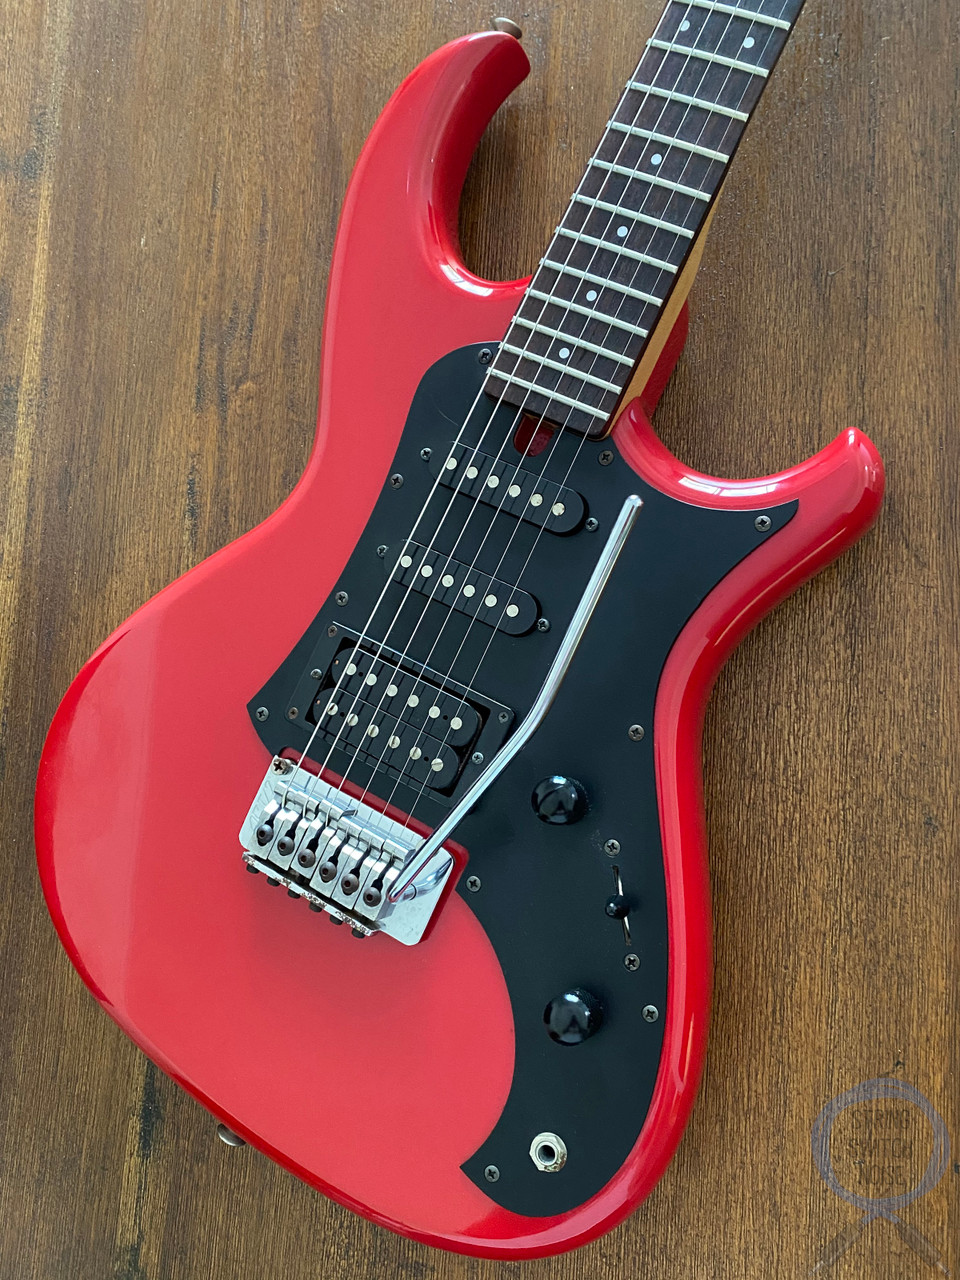 Aria Pro II Guitar, MIJ 1986, RS Wildcat, Red, HSS 